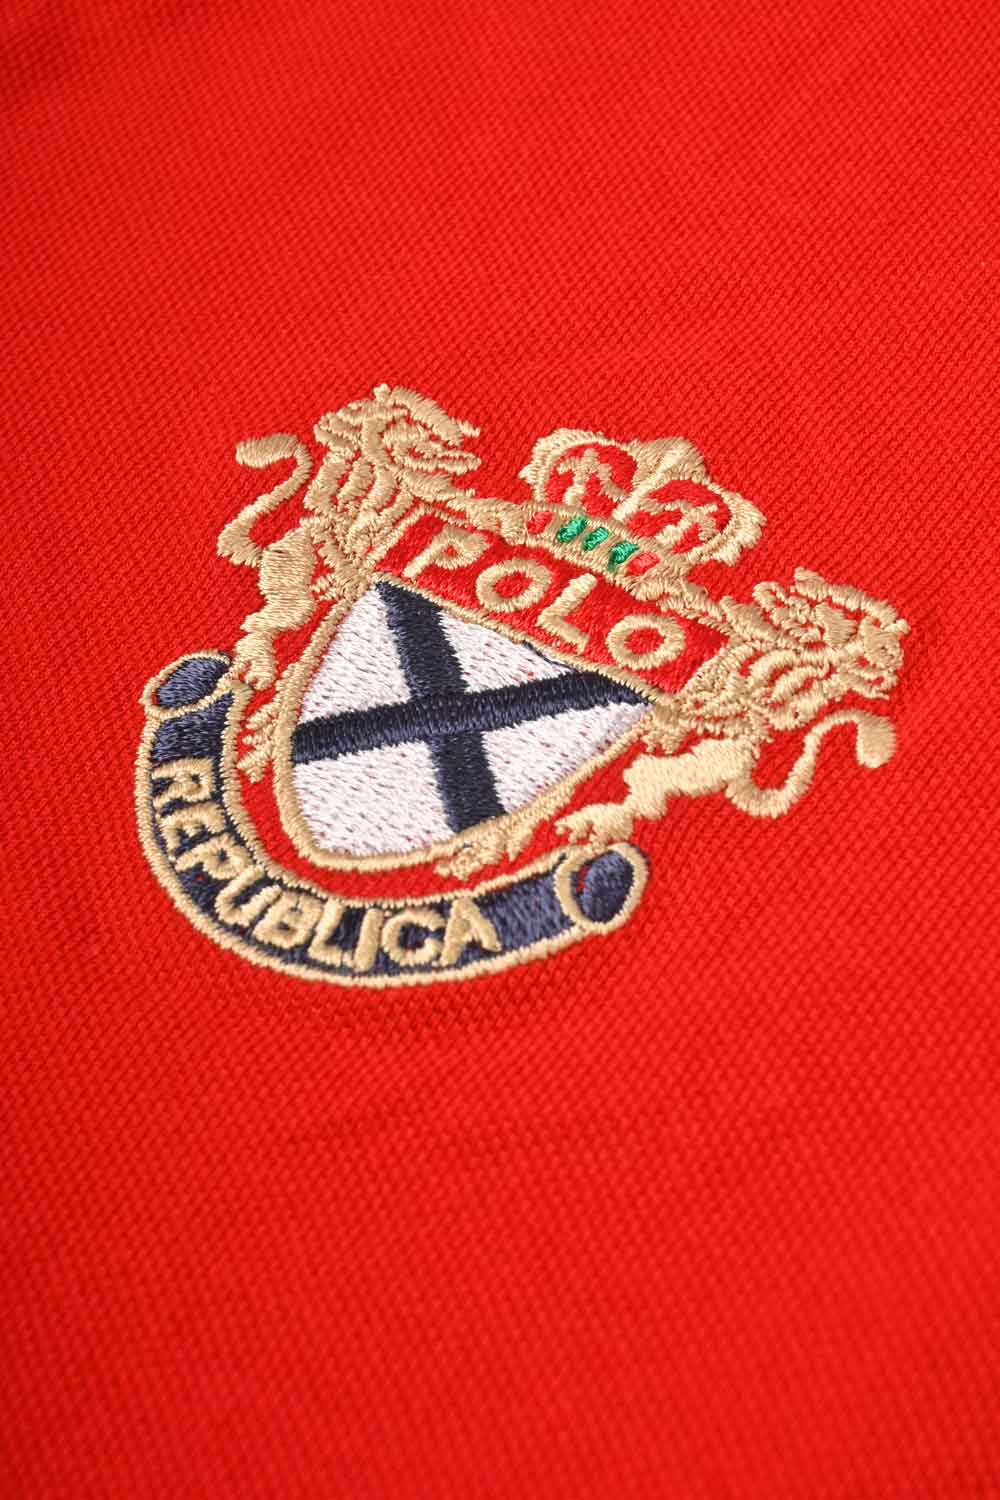 Polo Republica Men's Crest & Cavalry PR Embroidered Short Sleeve Polo Shirt Men's Polo Shirt Polo Republica 